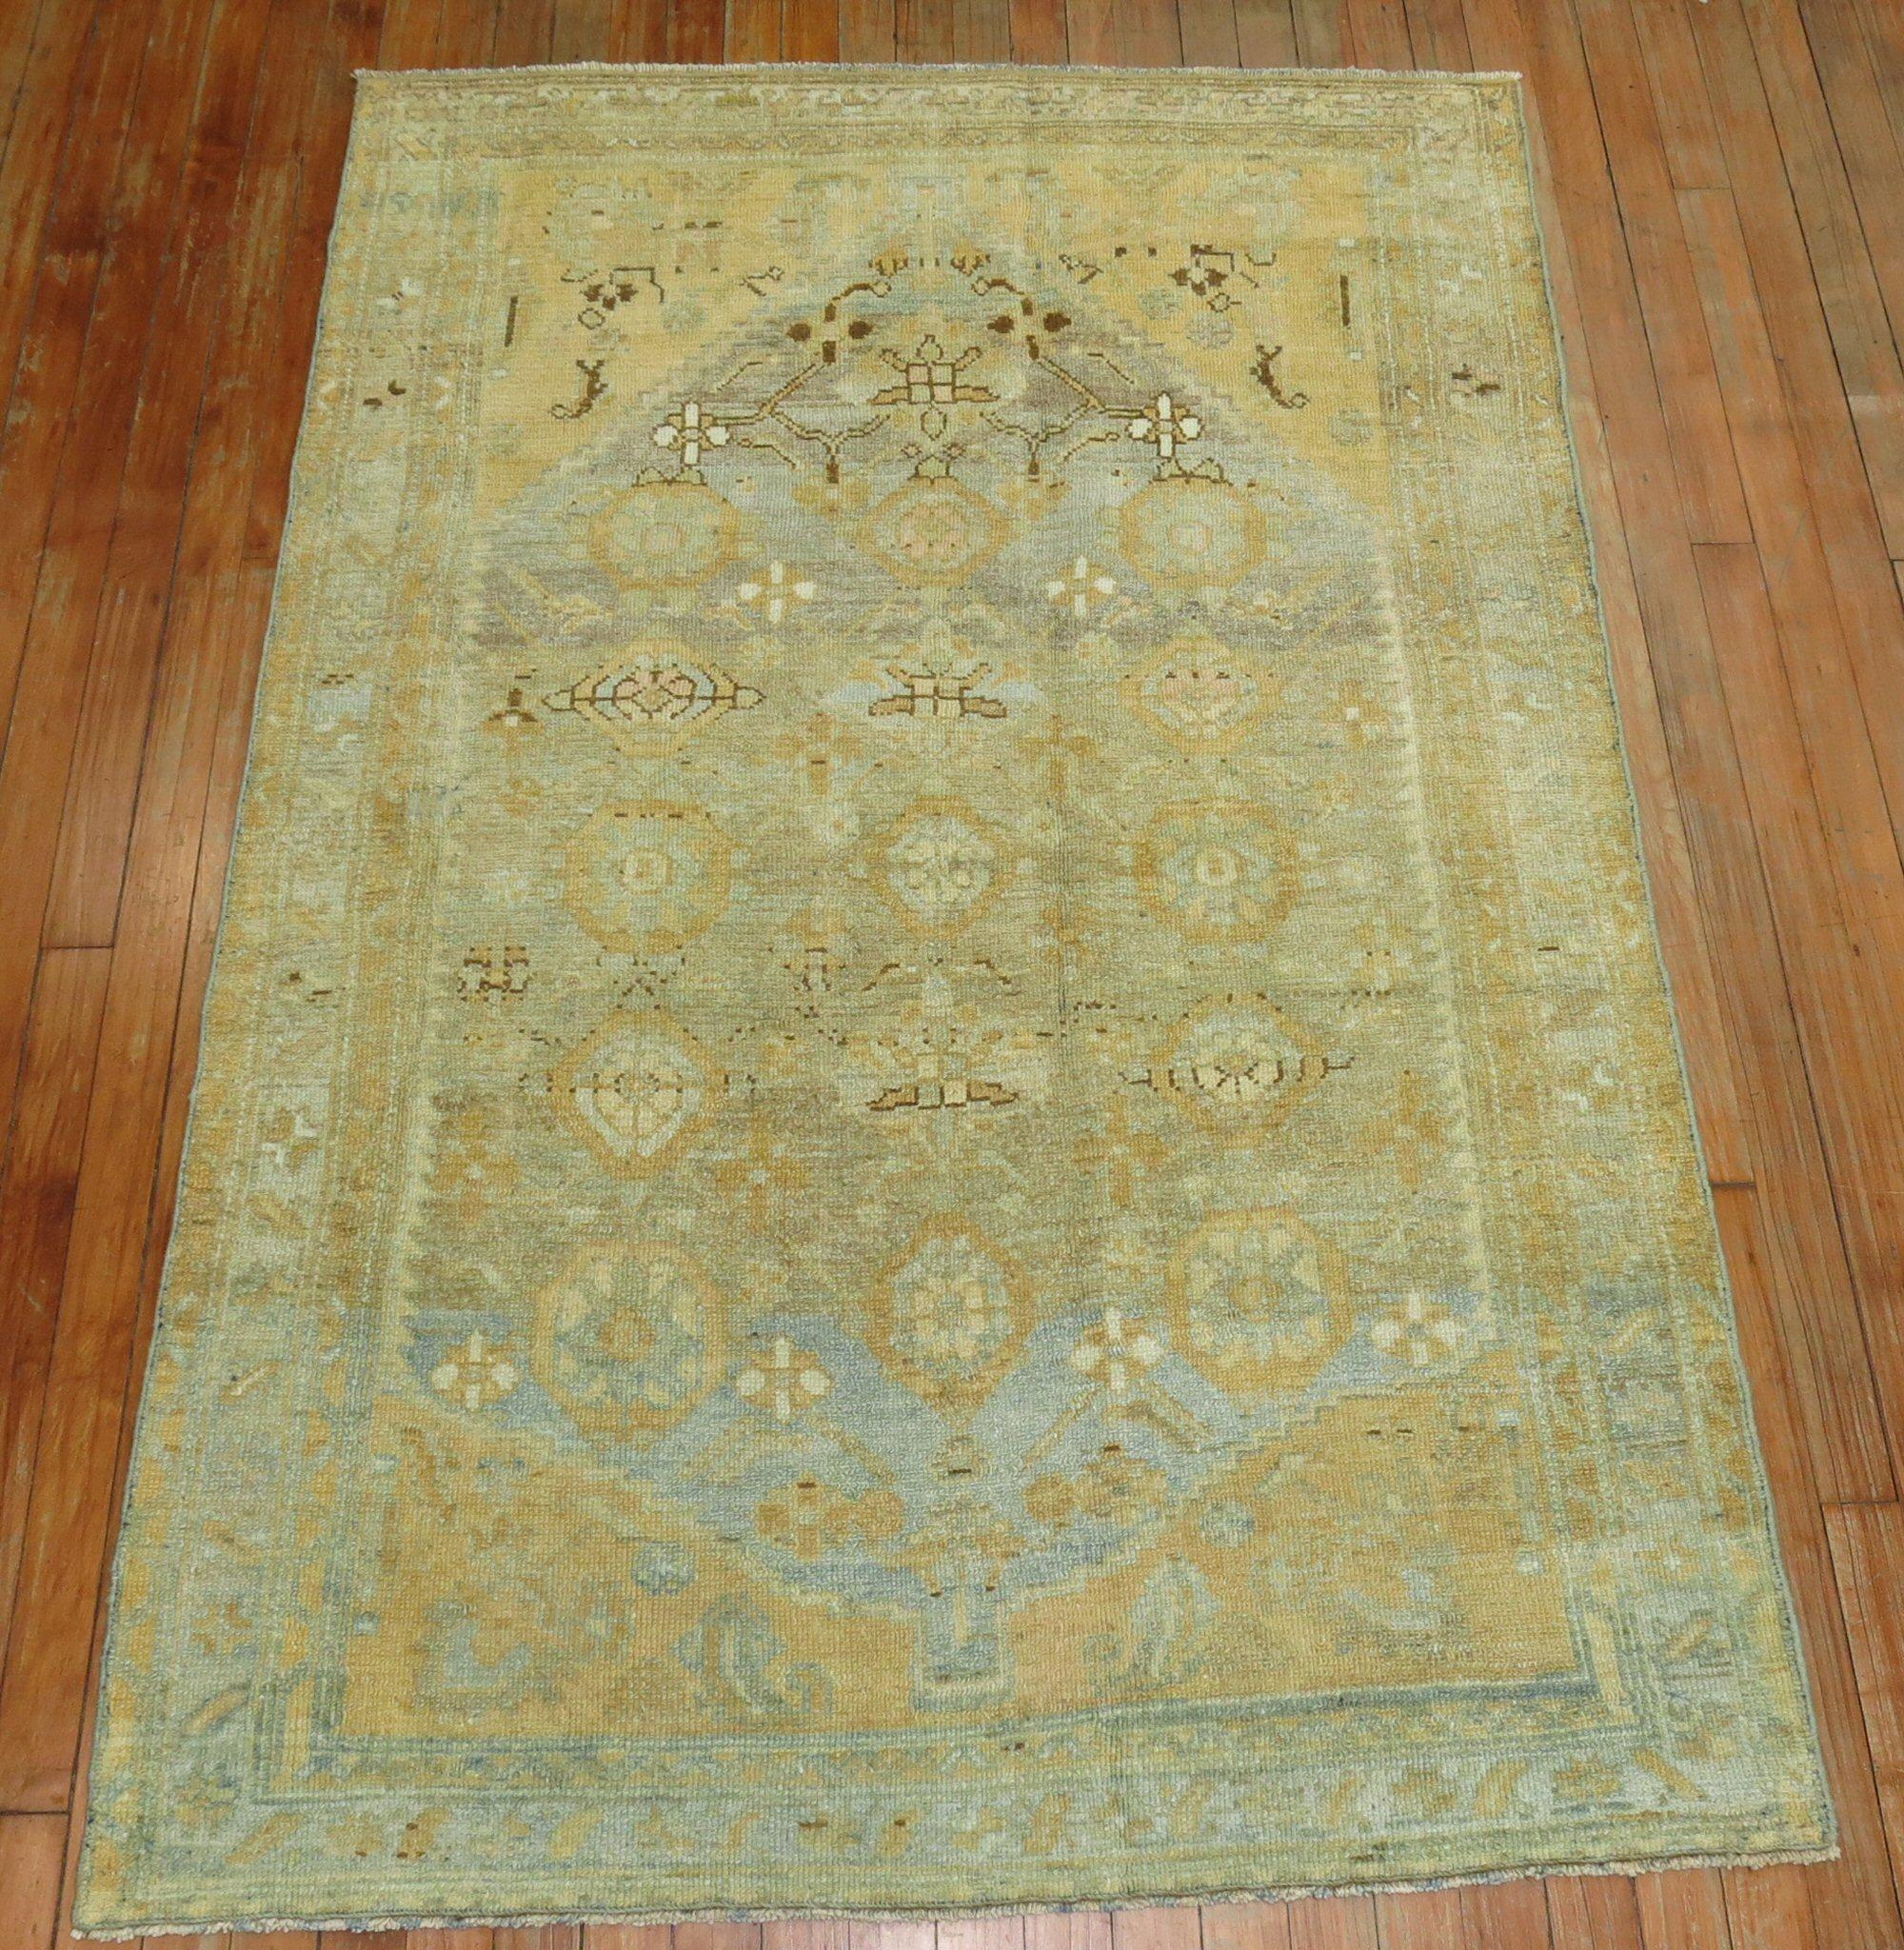 Ein übergroßer persischer Malayer-Teppich aus dem 20. Jahrhundert mit einem Allover-Mini-Khani-Muster in Sand und hellblauen Akzenten, das in der Sonne verblasst ist

Maße: 3'7